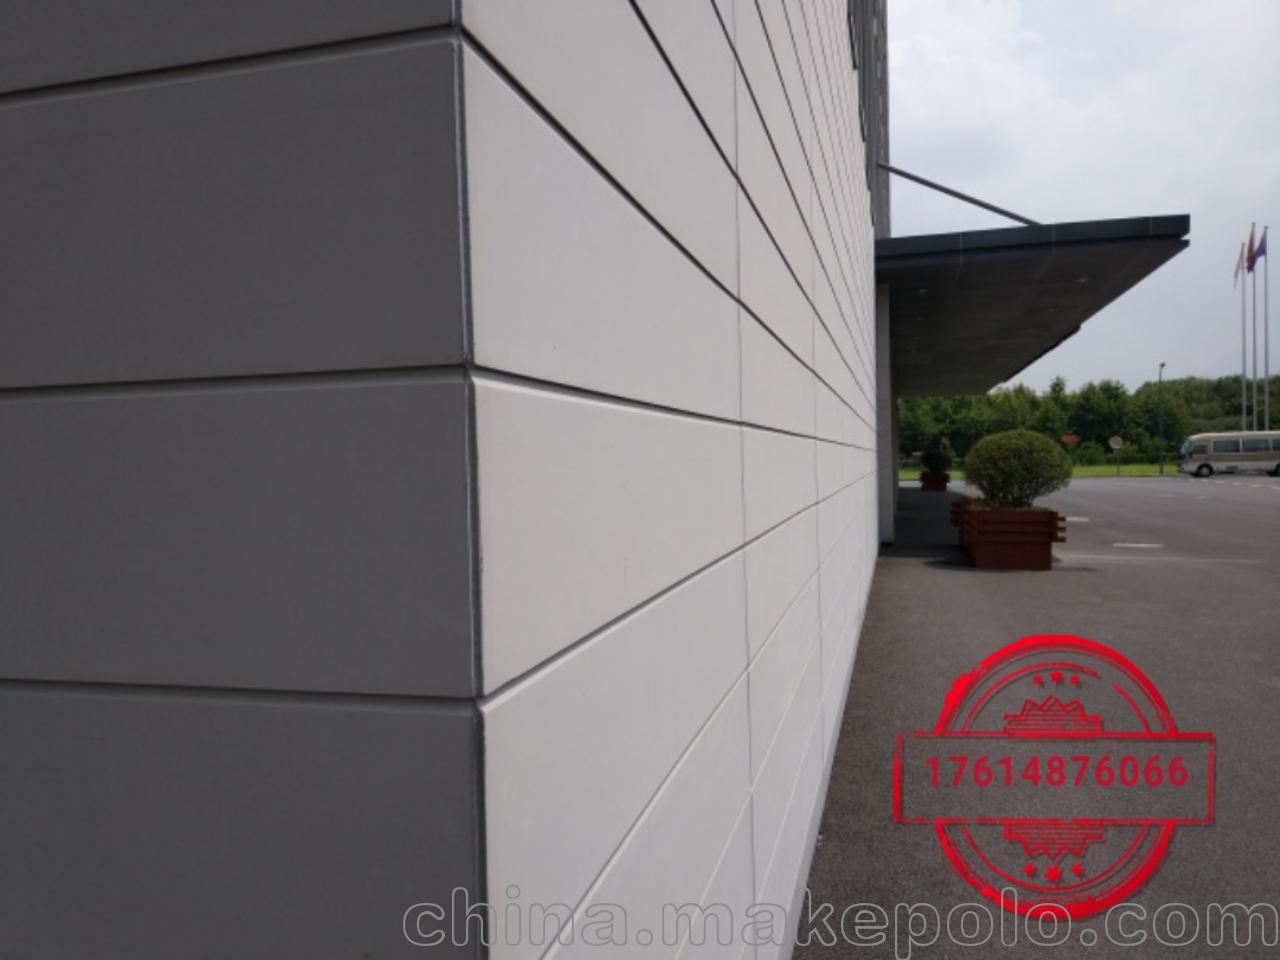 建材与装饰材料 装饰装修材料 幕墙 ktc外墙板系列增强纤维水泥压力板